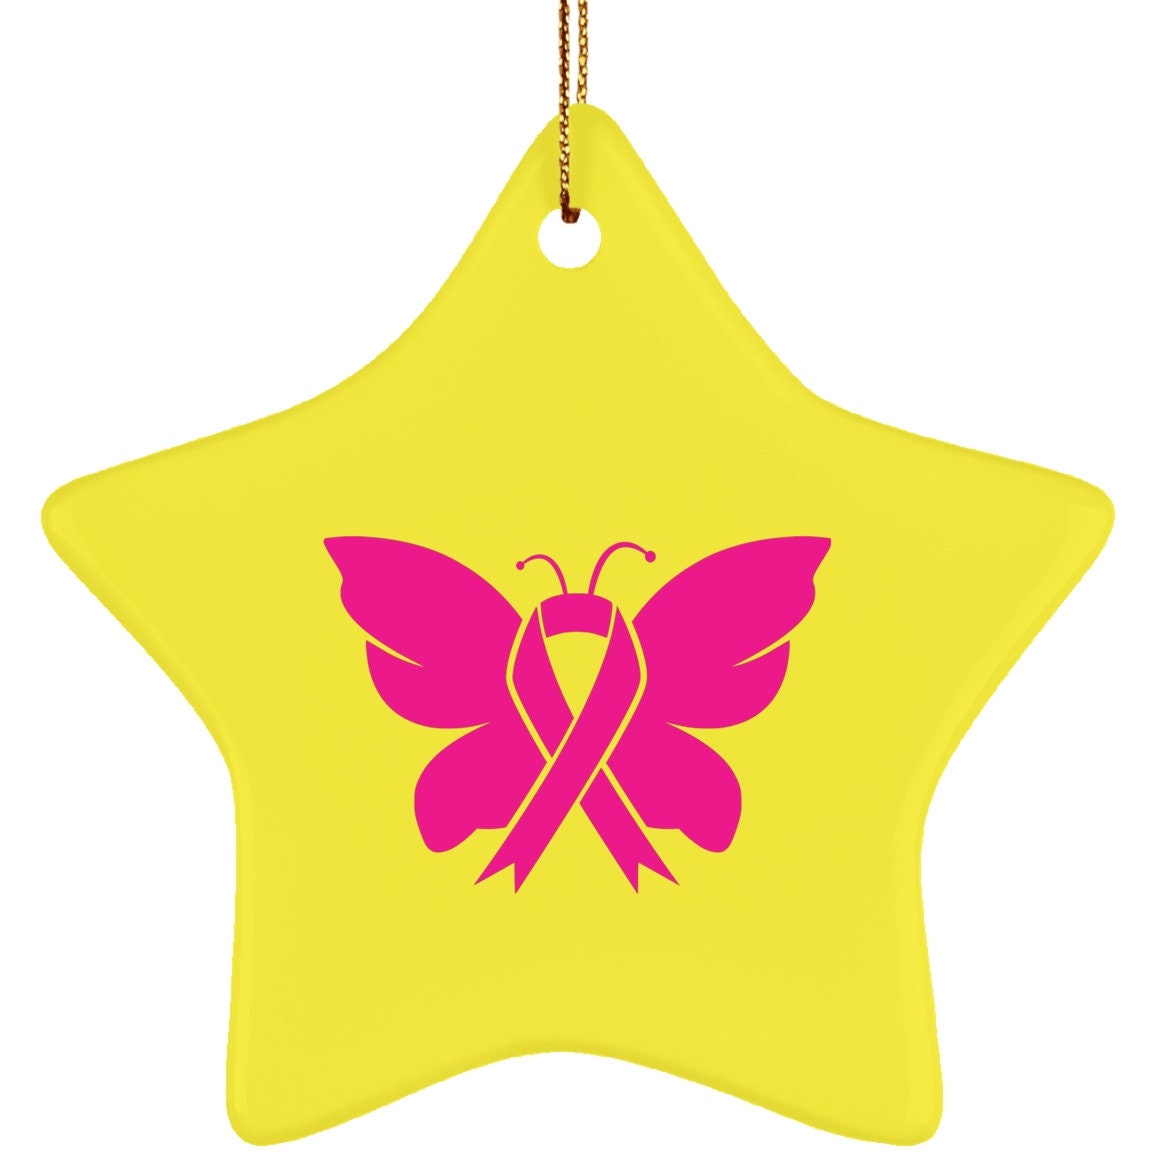 Керамический орнамент в виде звезды, посвященный раку молочной железы, в октябре мы носим розовое, сублимационный дизайн, бабочка. Осведомленность о раке молочной железы, розовая бабочка - plusminusco.com